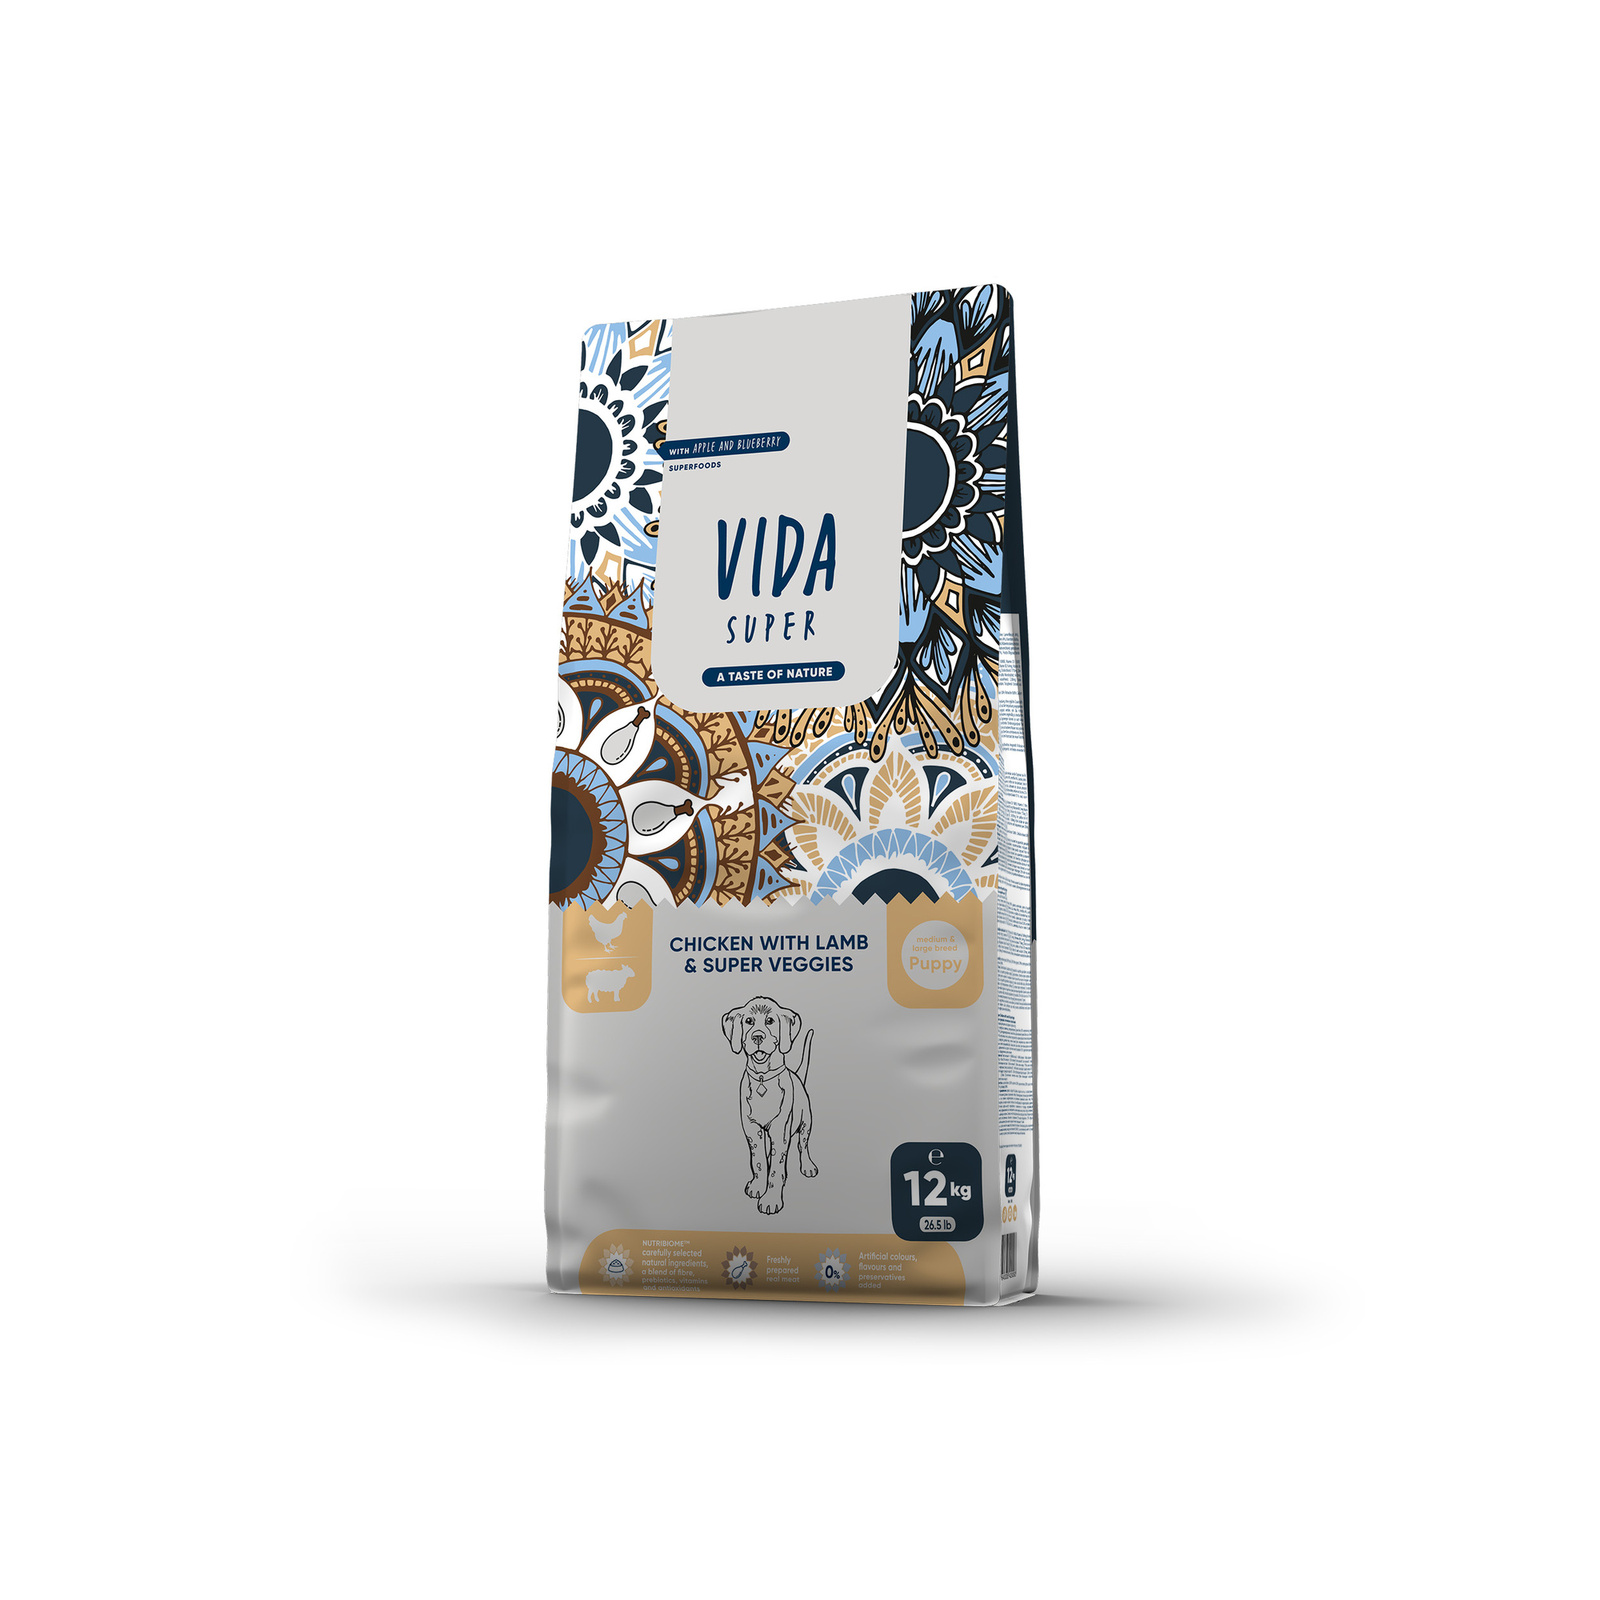 VIDA Super VIDA Super корм для щенков средних и крупных пород с курицей, ягненком и овощами (12 кг)